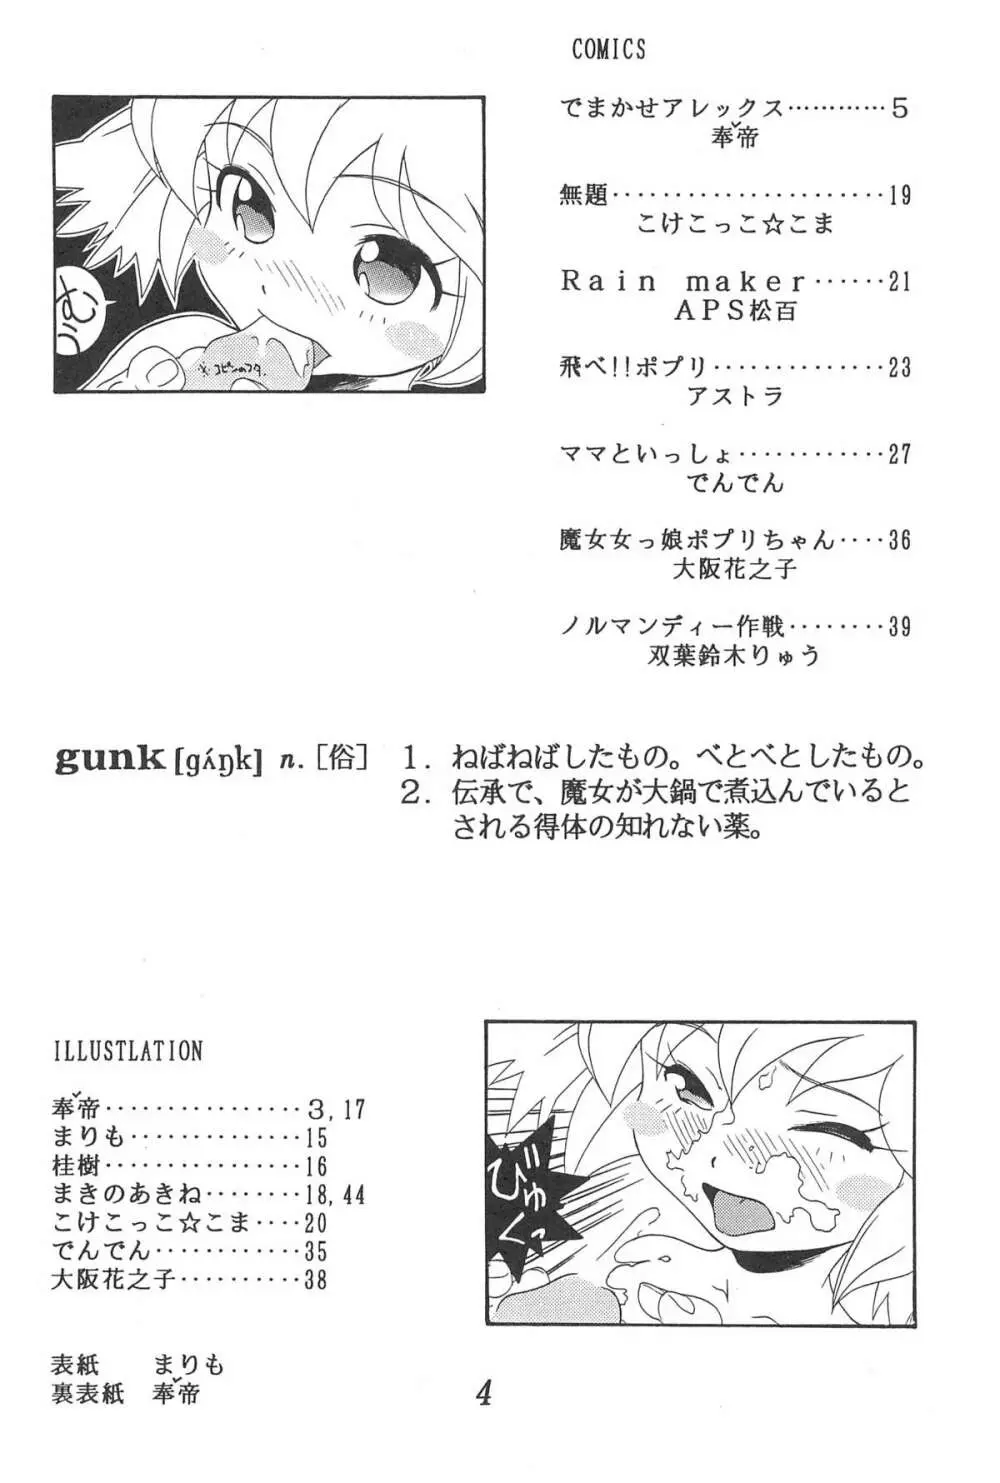 GUNK改訂版 - page6